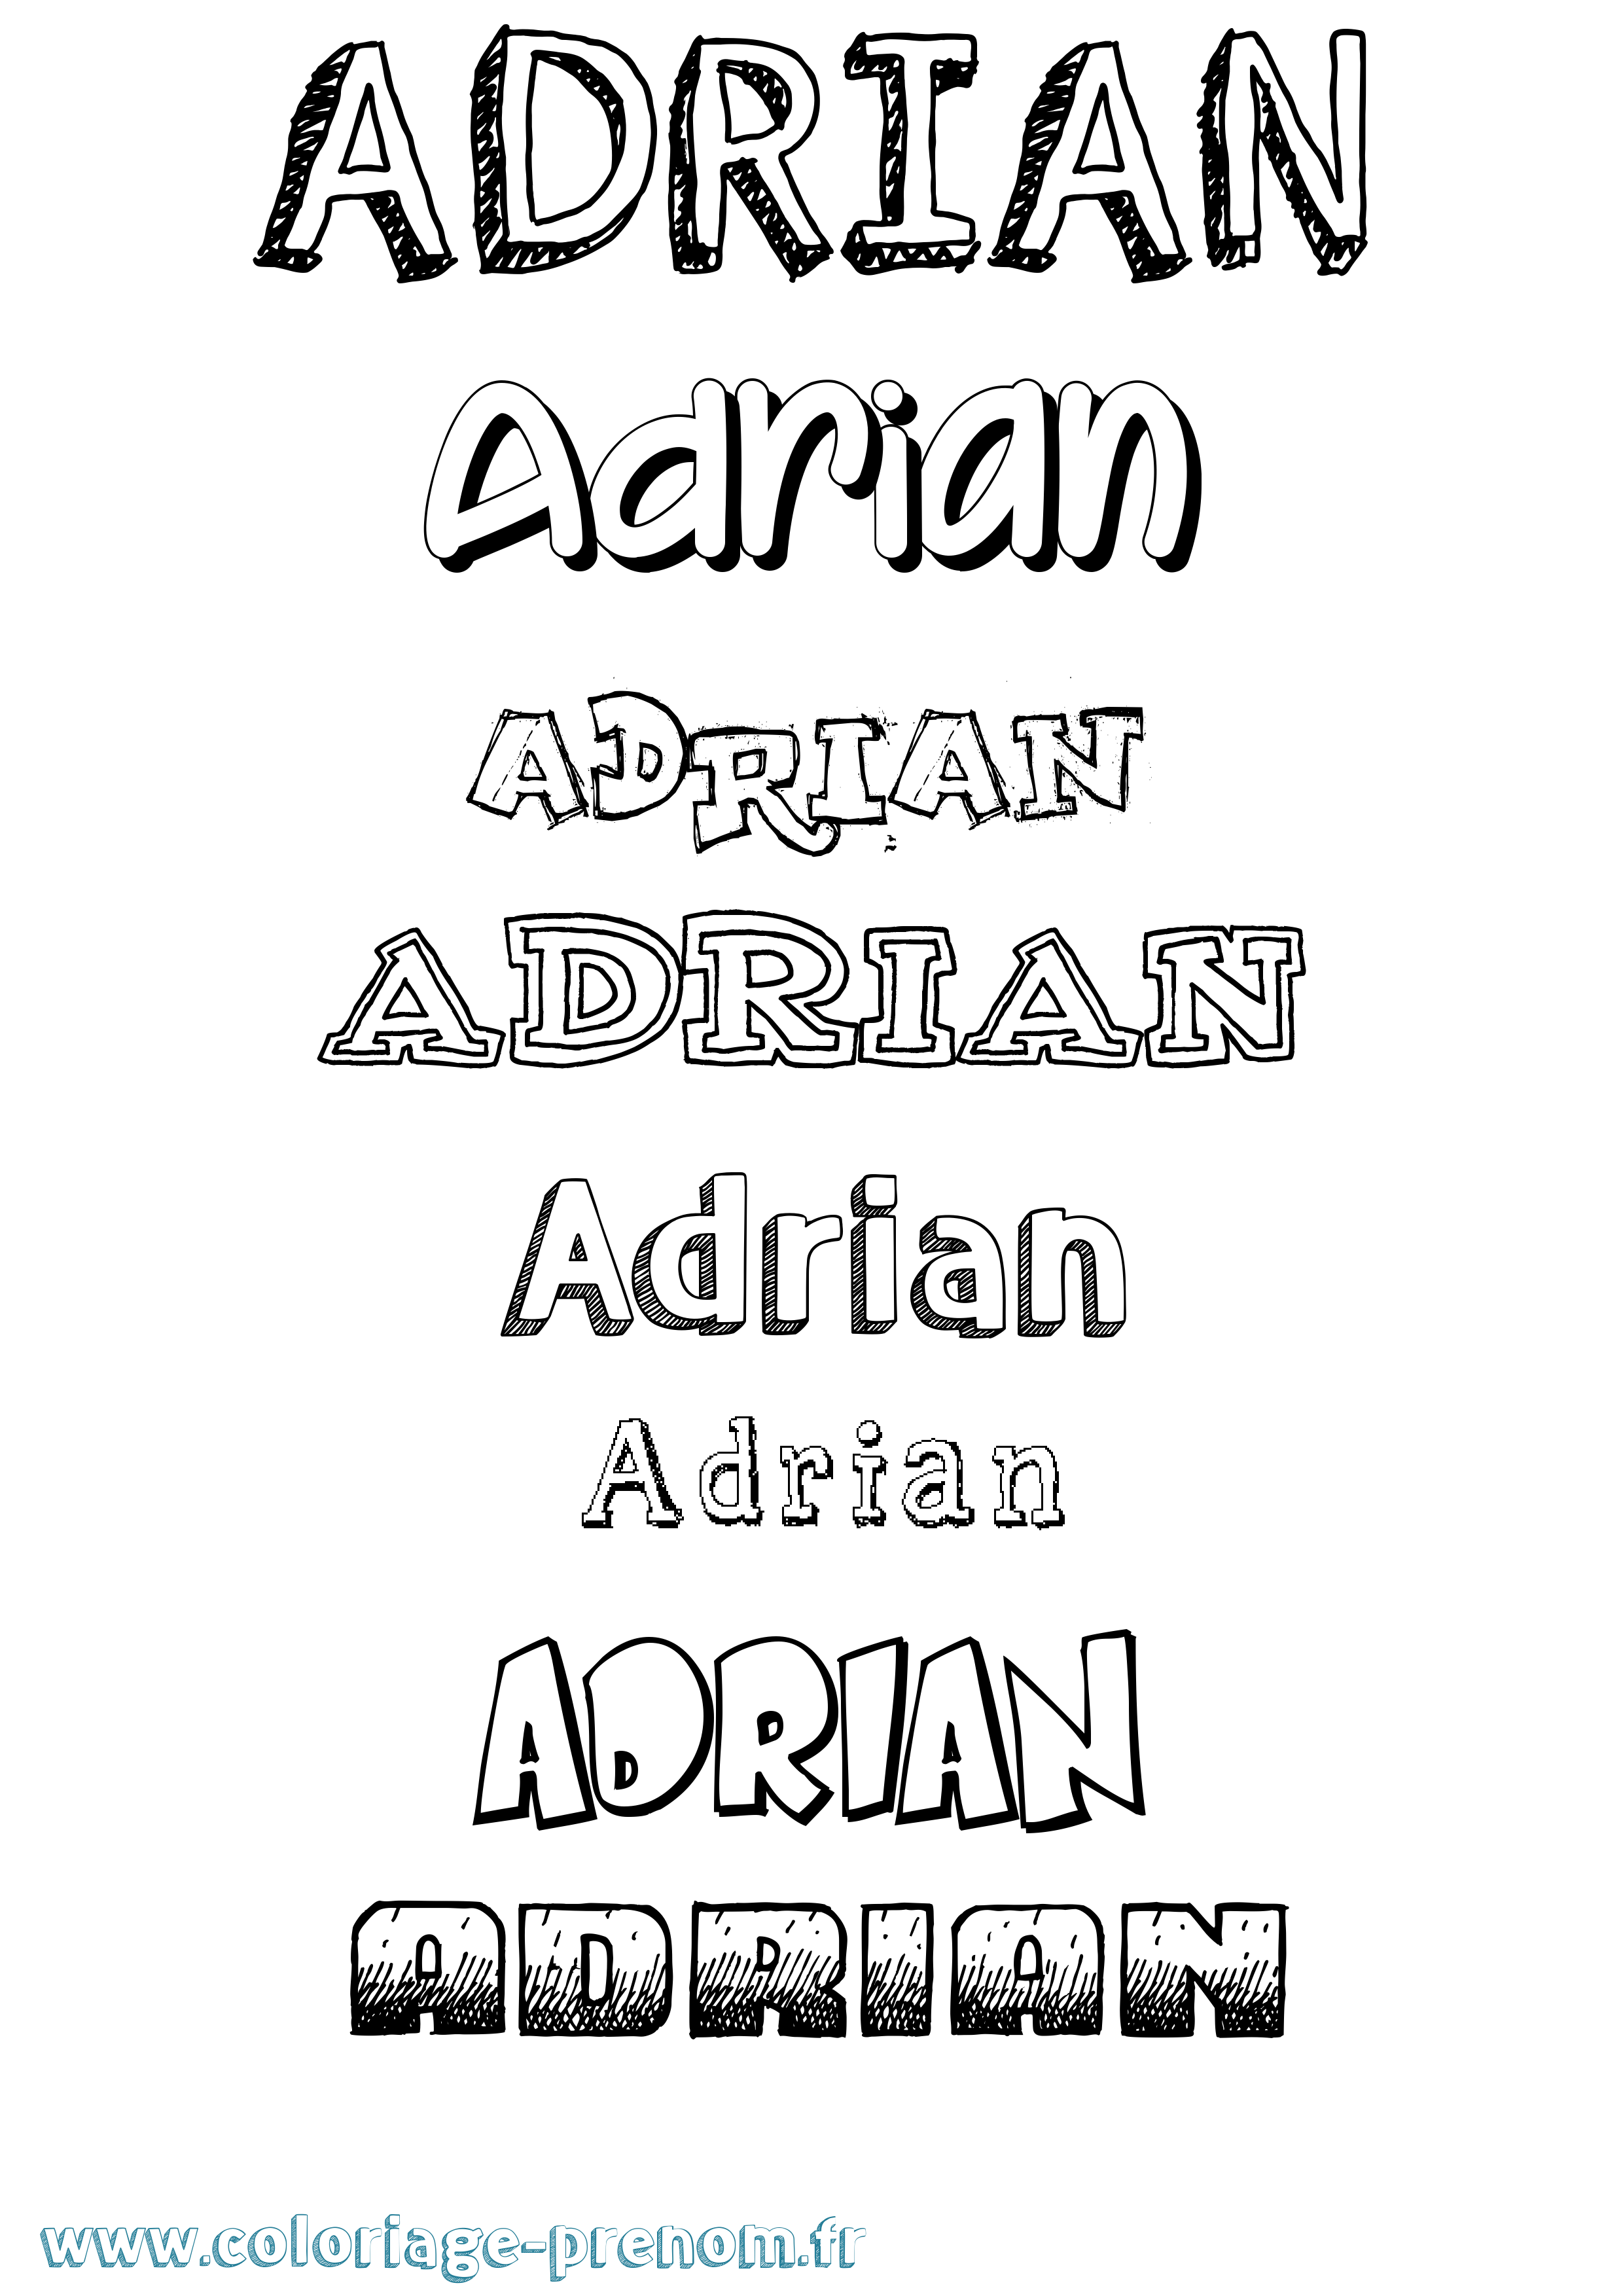 Coloriage prénom Adrian